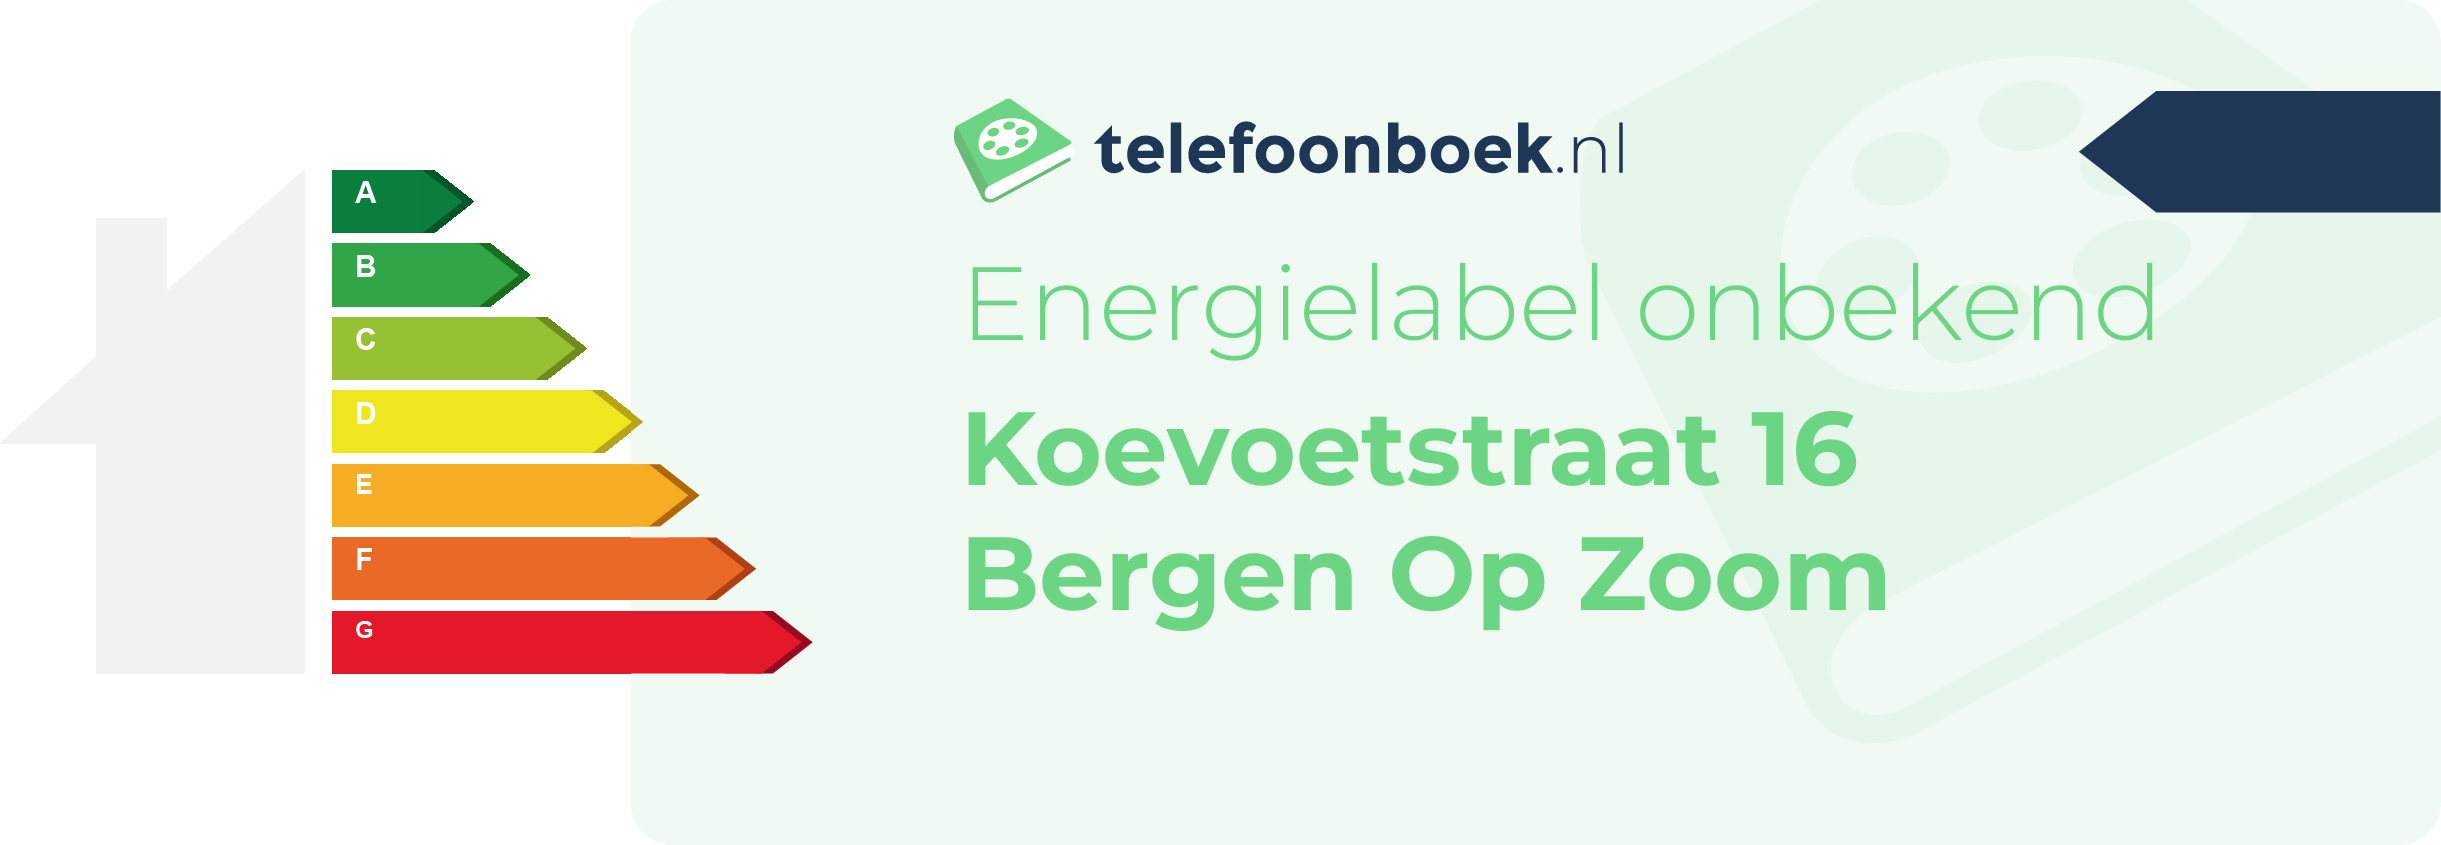 Energielabel Koevoetstraat 16 Bergen Op Zoom